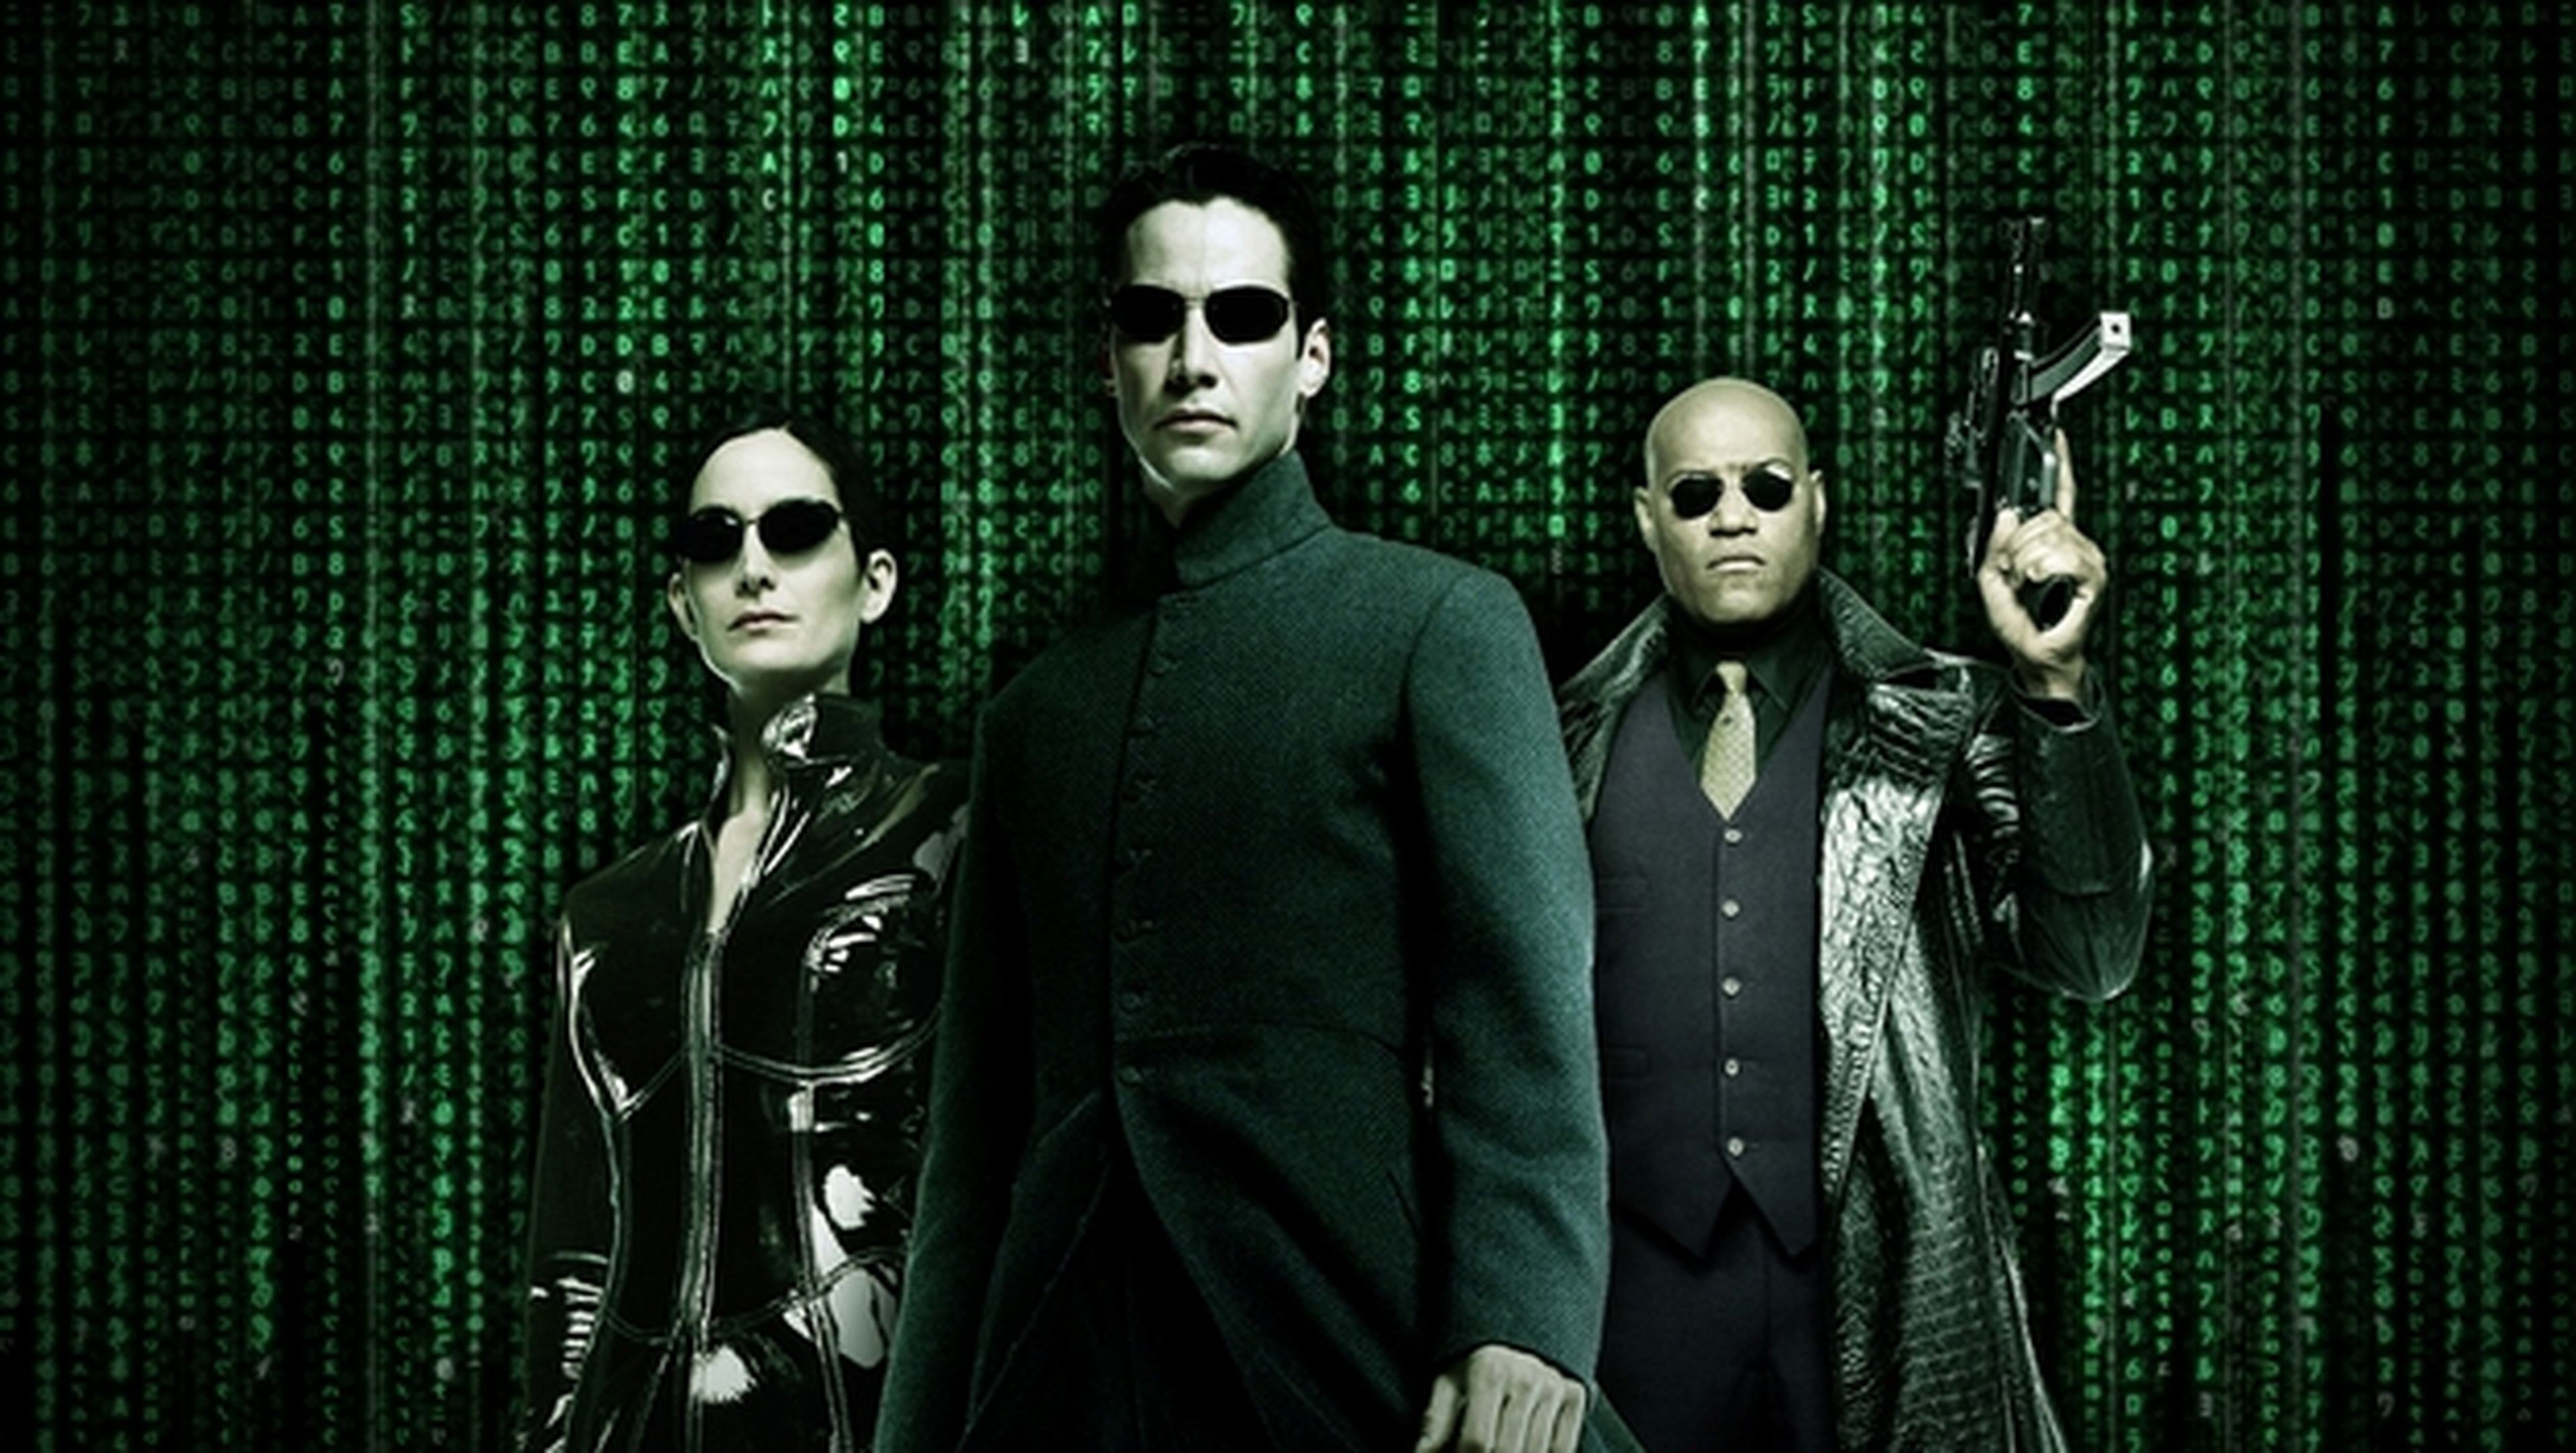 Nueva trilogía de Matrix, en forma de precuela, en 2017, según Latino Review